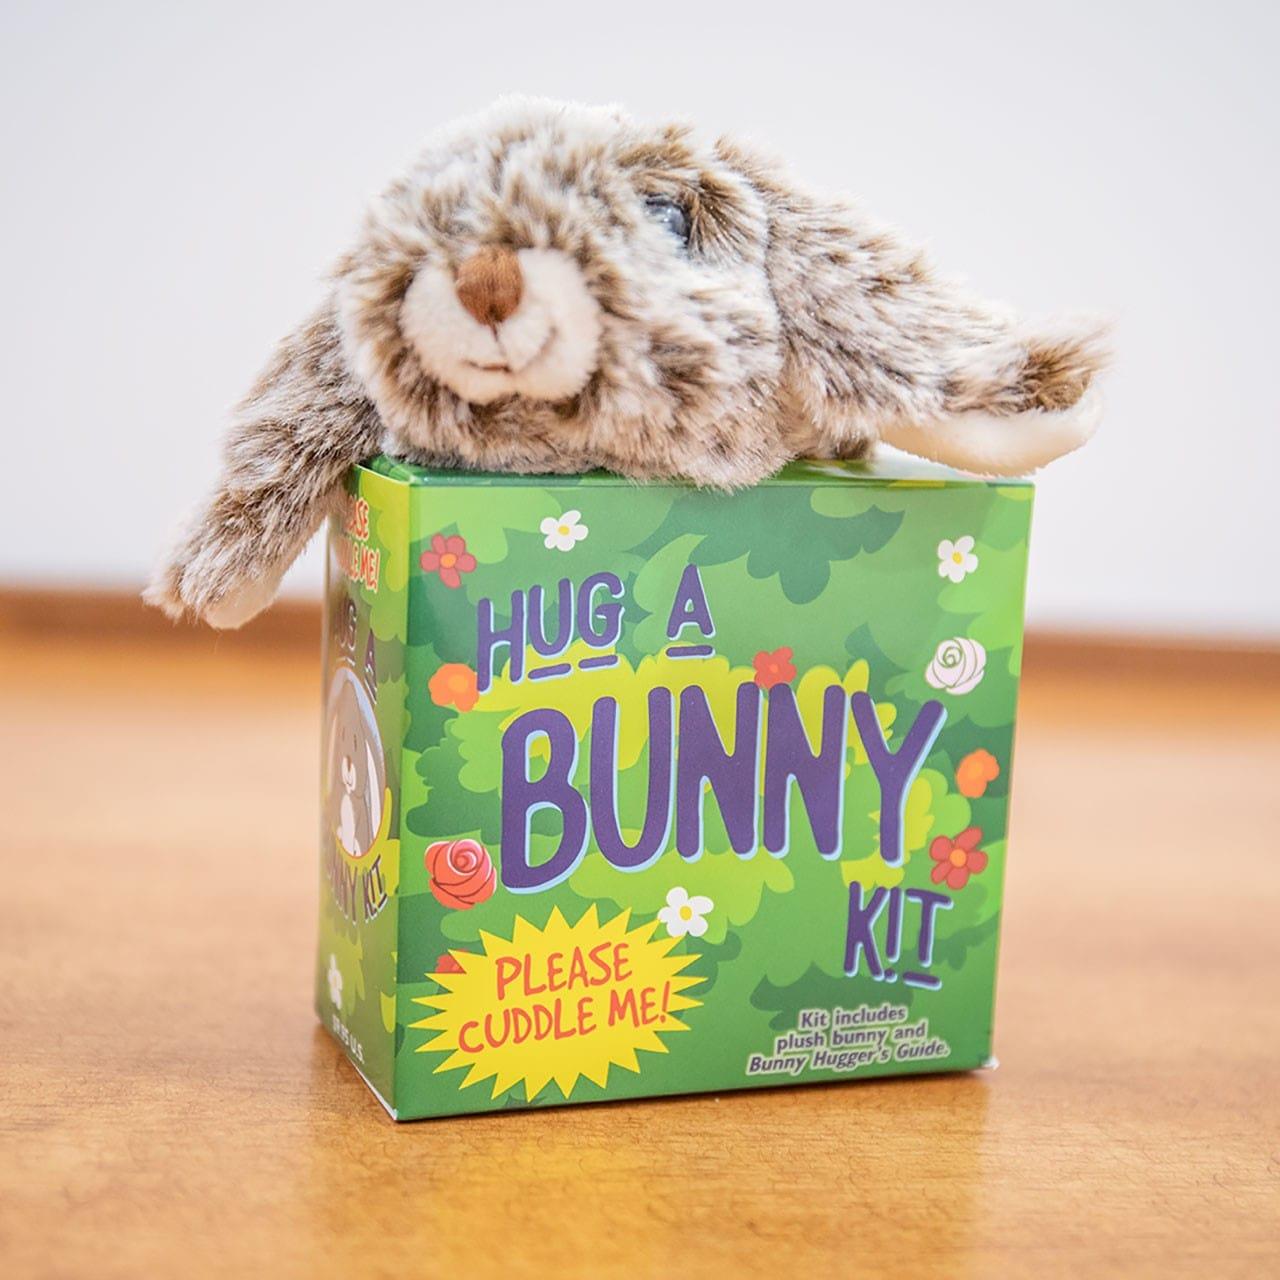 Hug A Bunny Kit